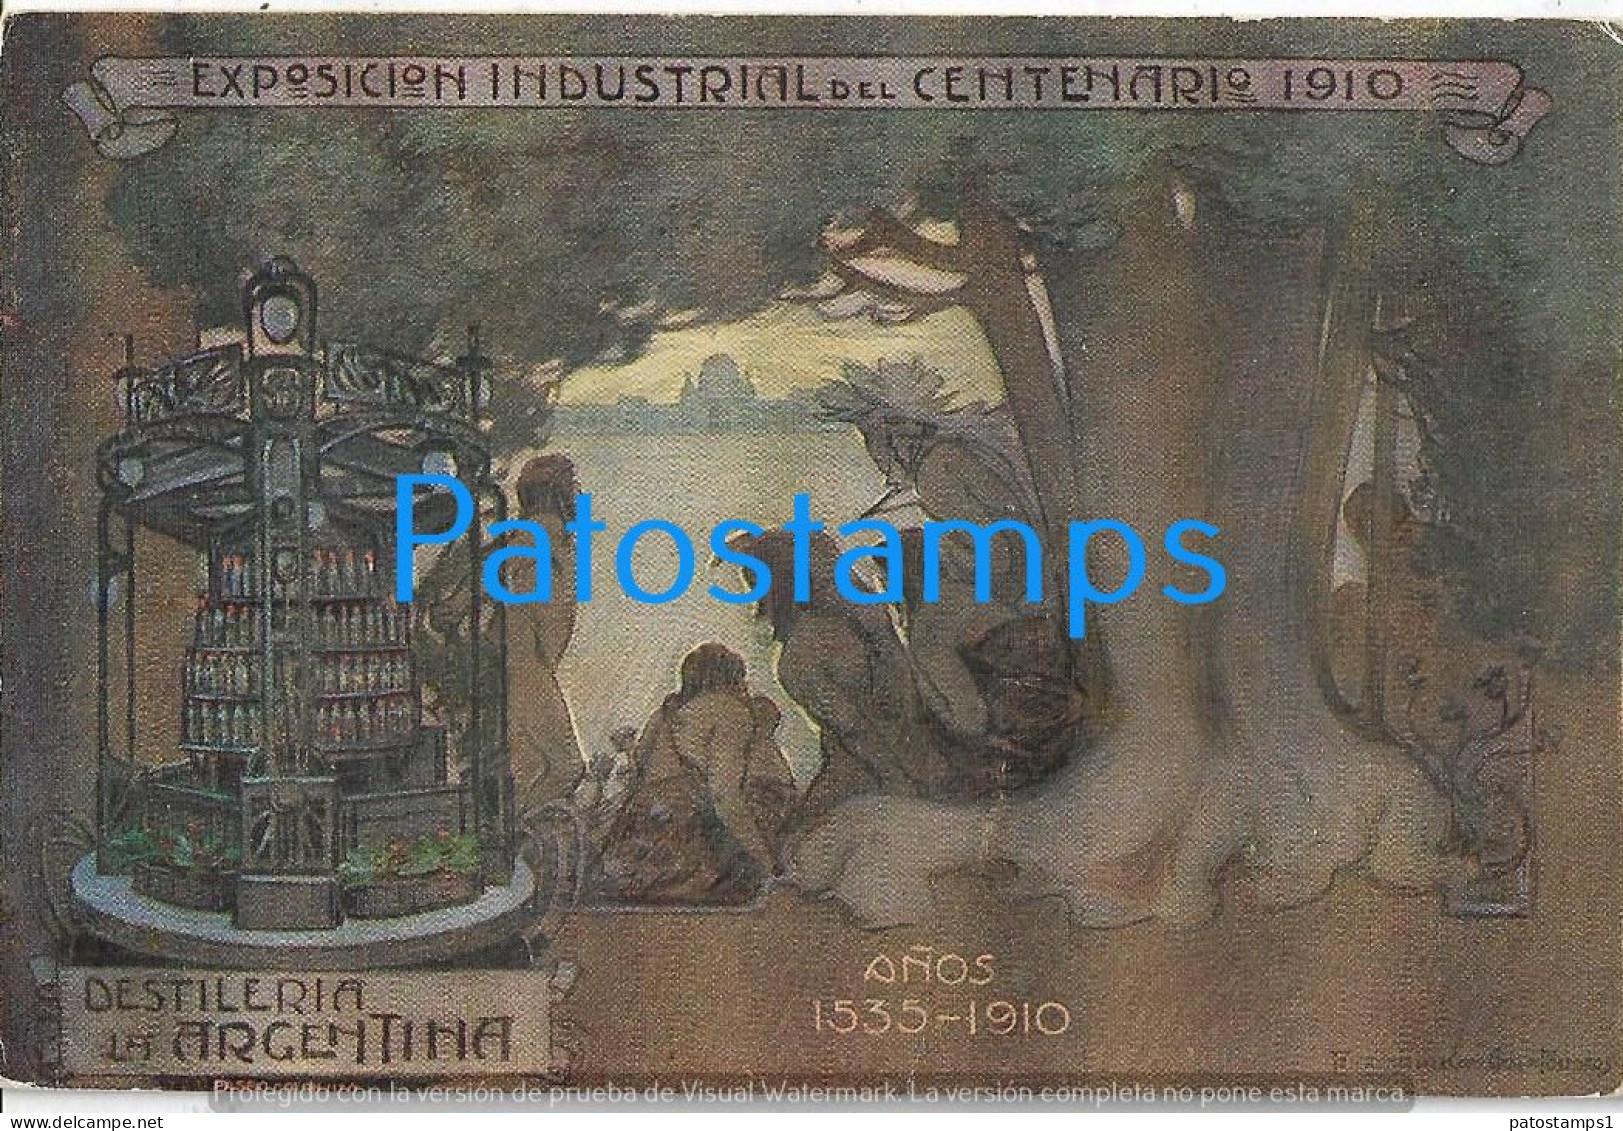 227837 ARGENTINA ART EXPOSICION INDUSTRIAL DEL CENTENARIO 1910 DESTILERIA POSTAL POSTCARD - Argentinien